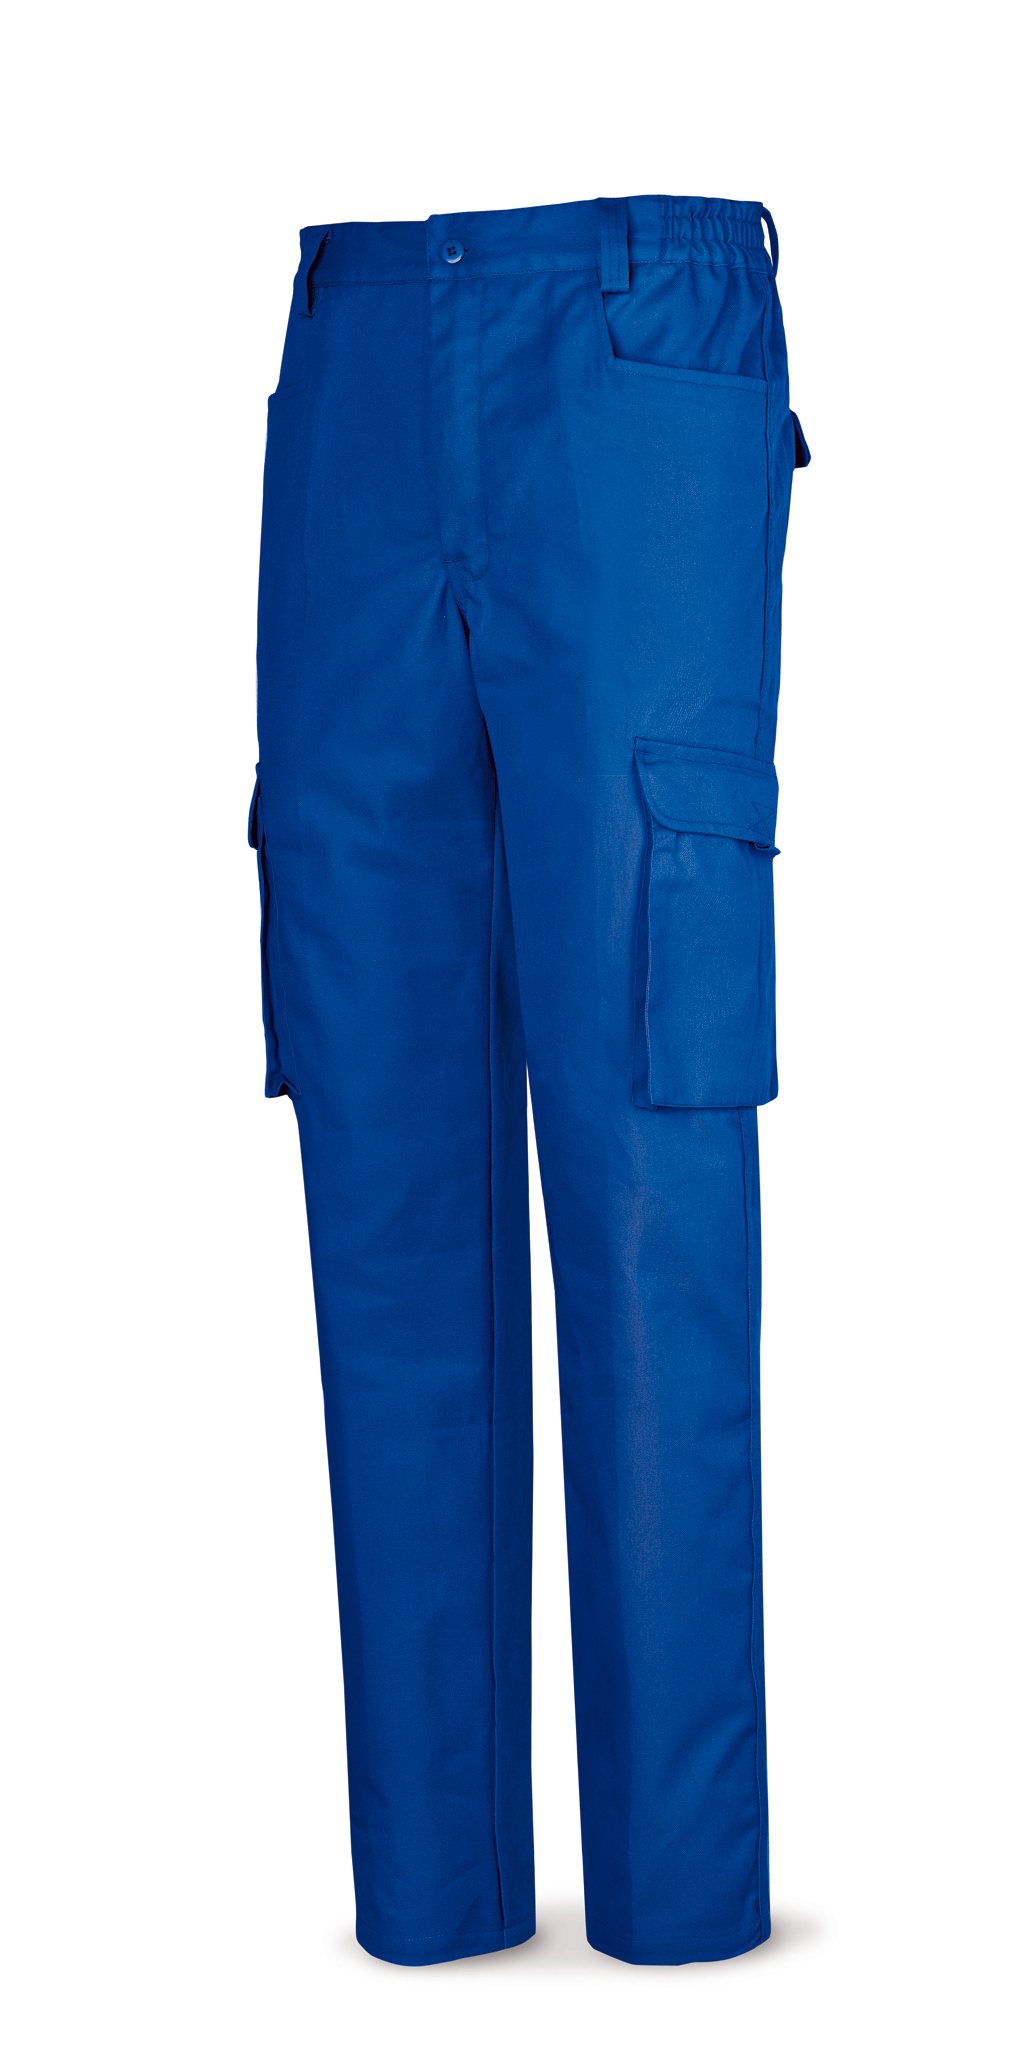 488-P Top Vestuario Laboral Serie Top Pantalón azulina algodón de 245 g. 